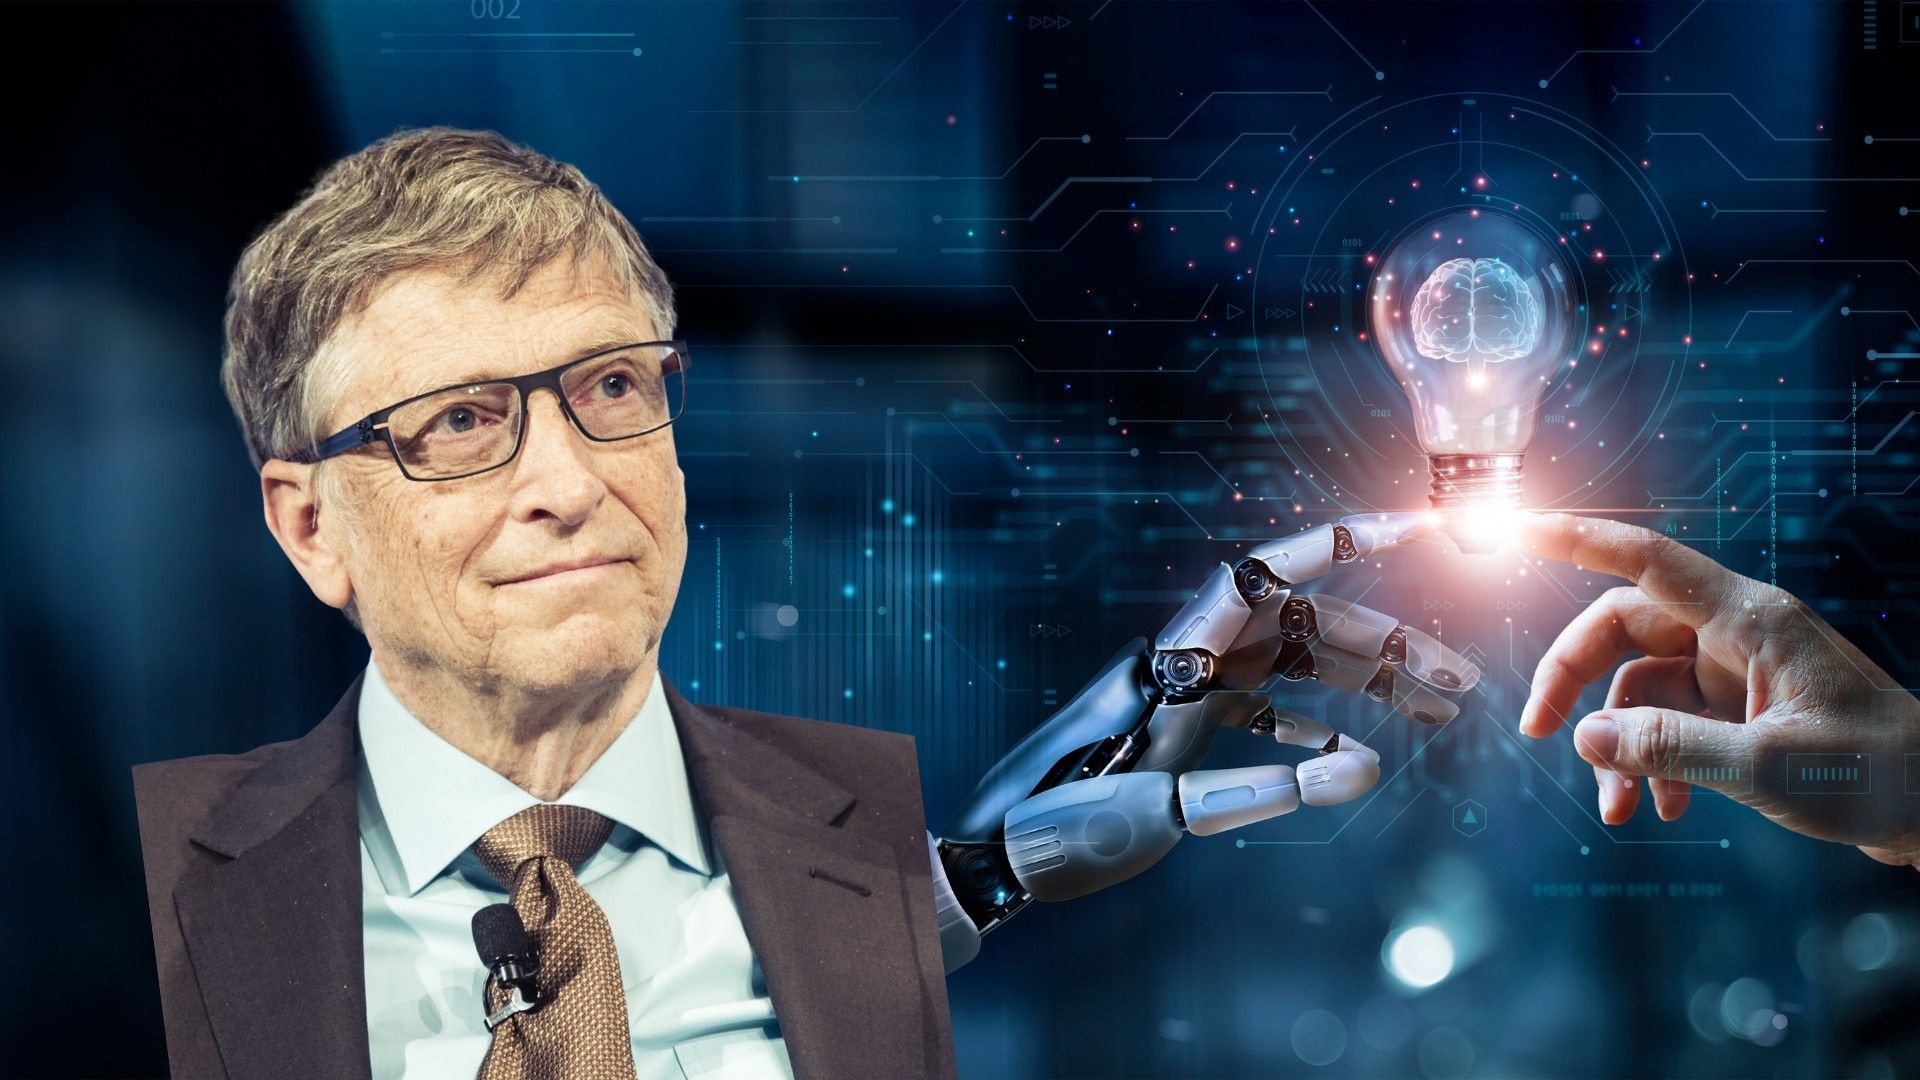 Bill Gates thừa nhận sự ra đời của AI là lần thứ 2 có một công nghệ đột phá mang tính cách mạng khiến ông ấn tượng (Ảnh minh họa: Pinterest).